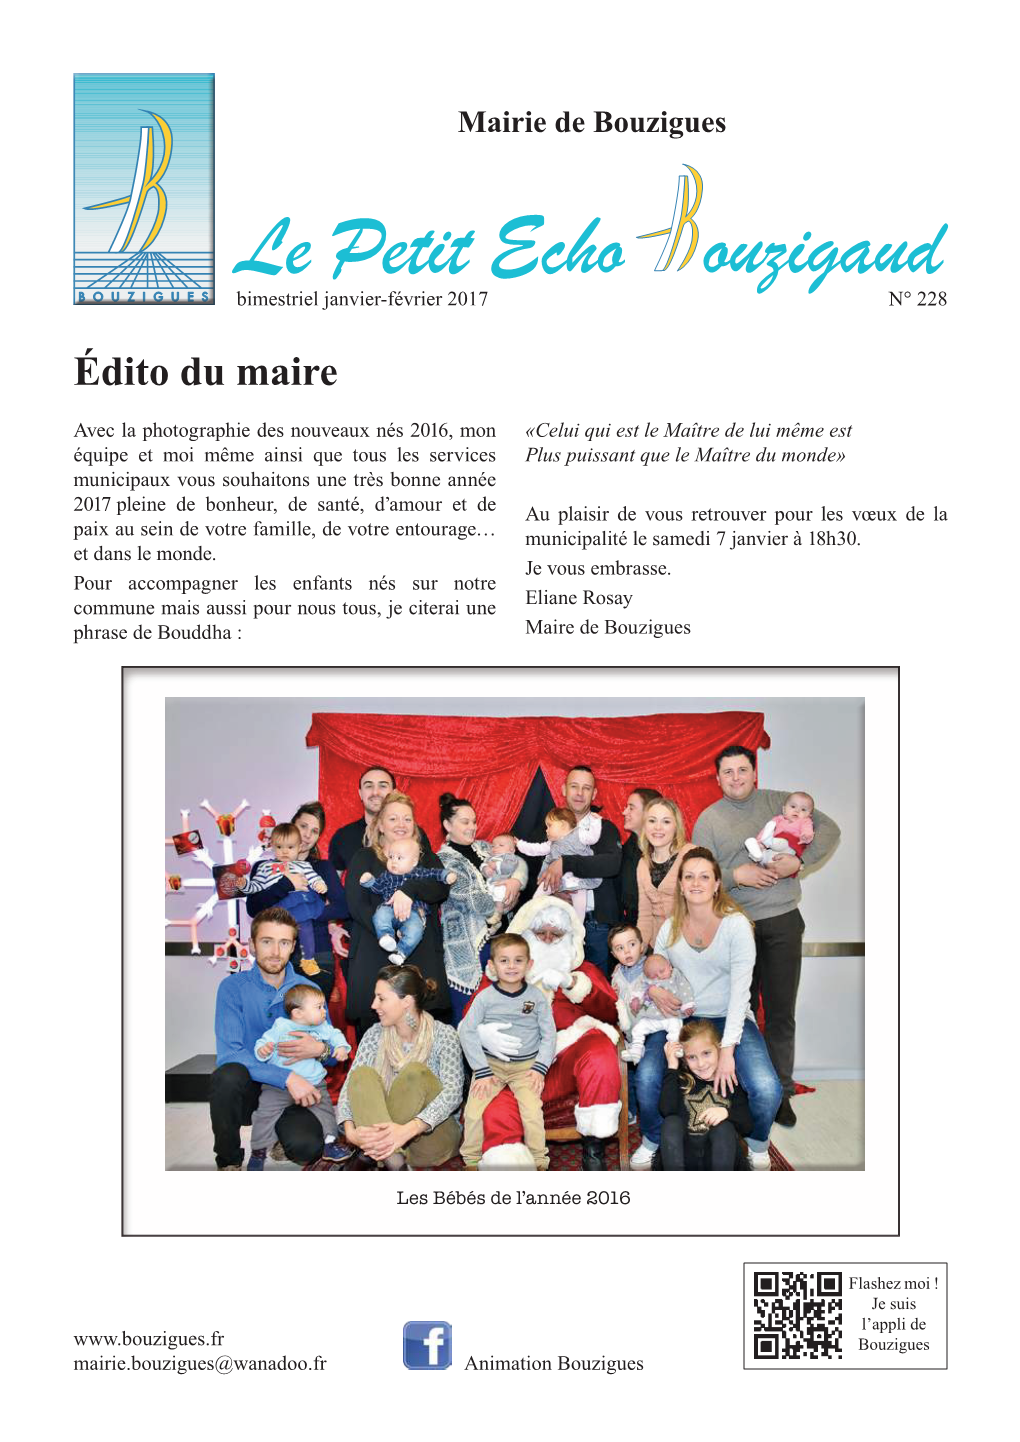 Le Petit Echo Ouzigaud Bimestriel Janvier-Février 2017 N° 228